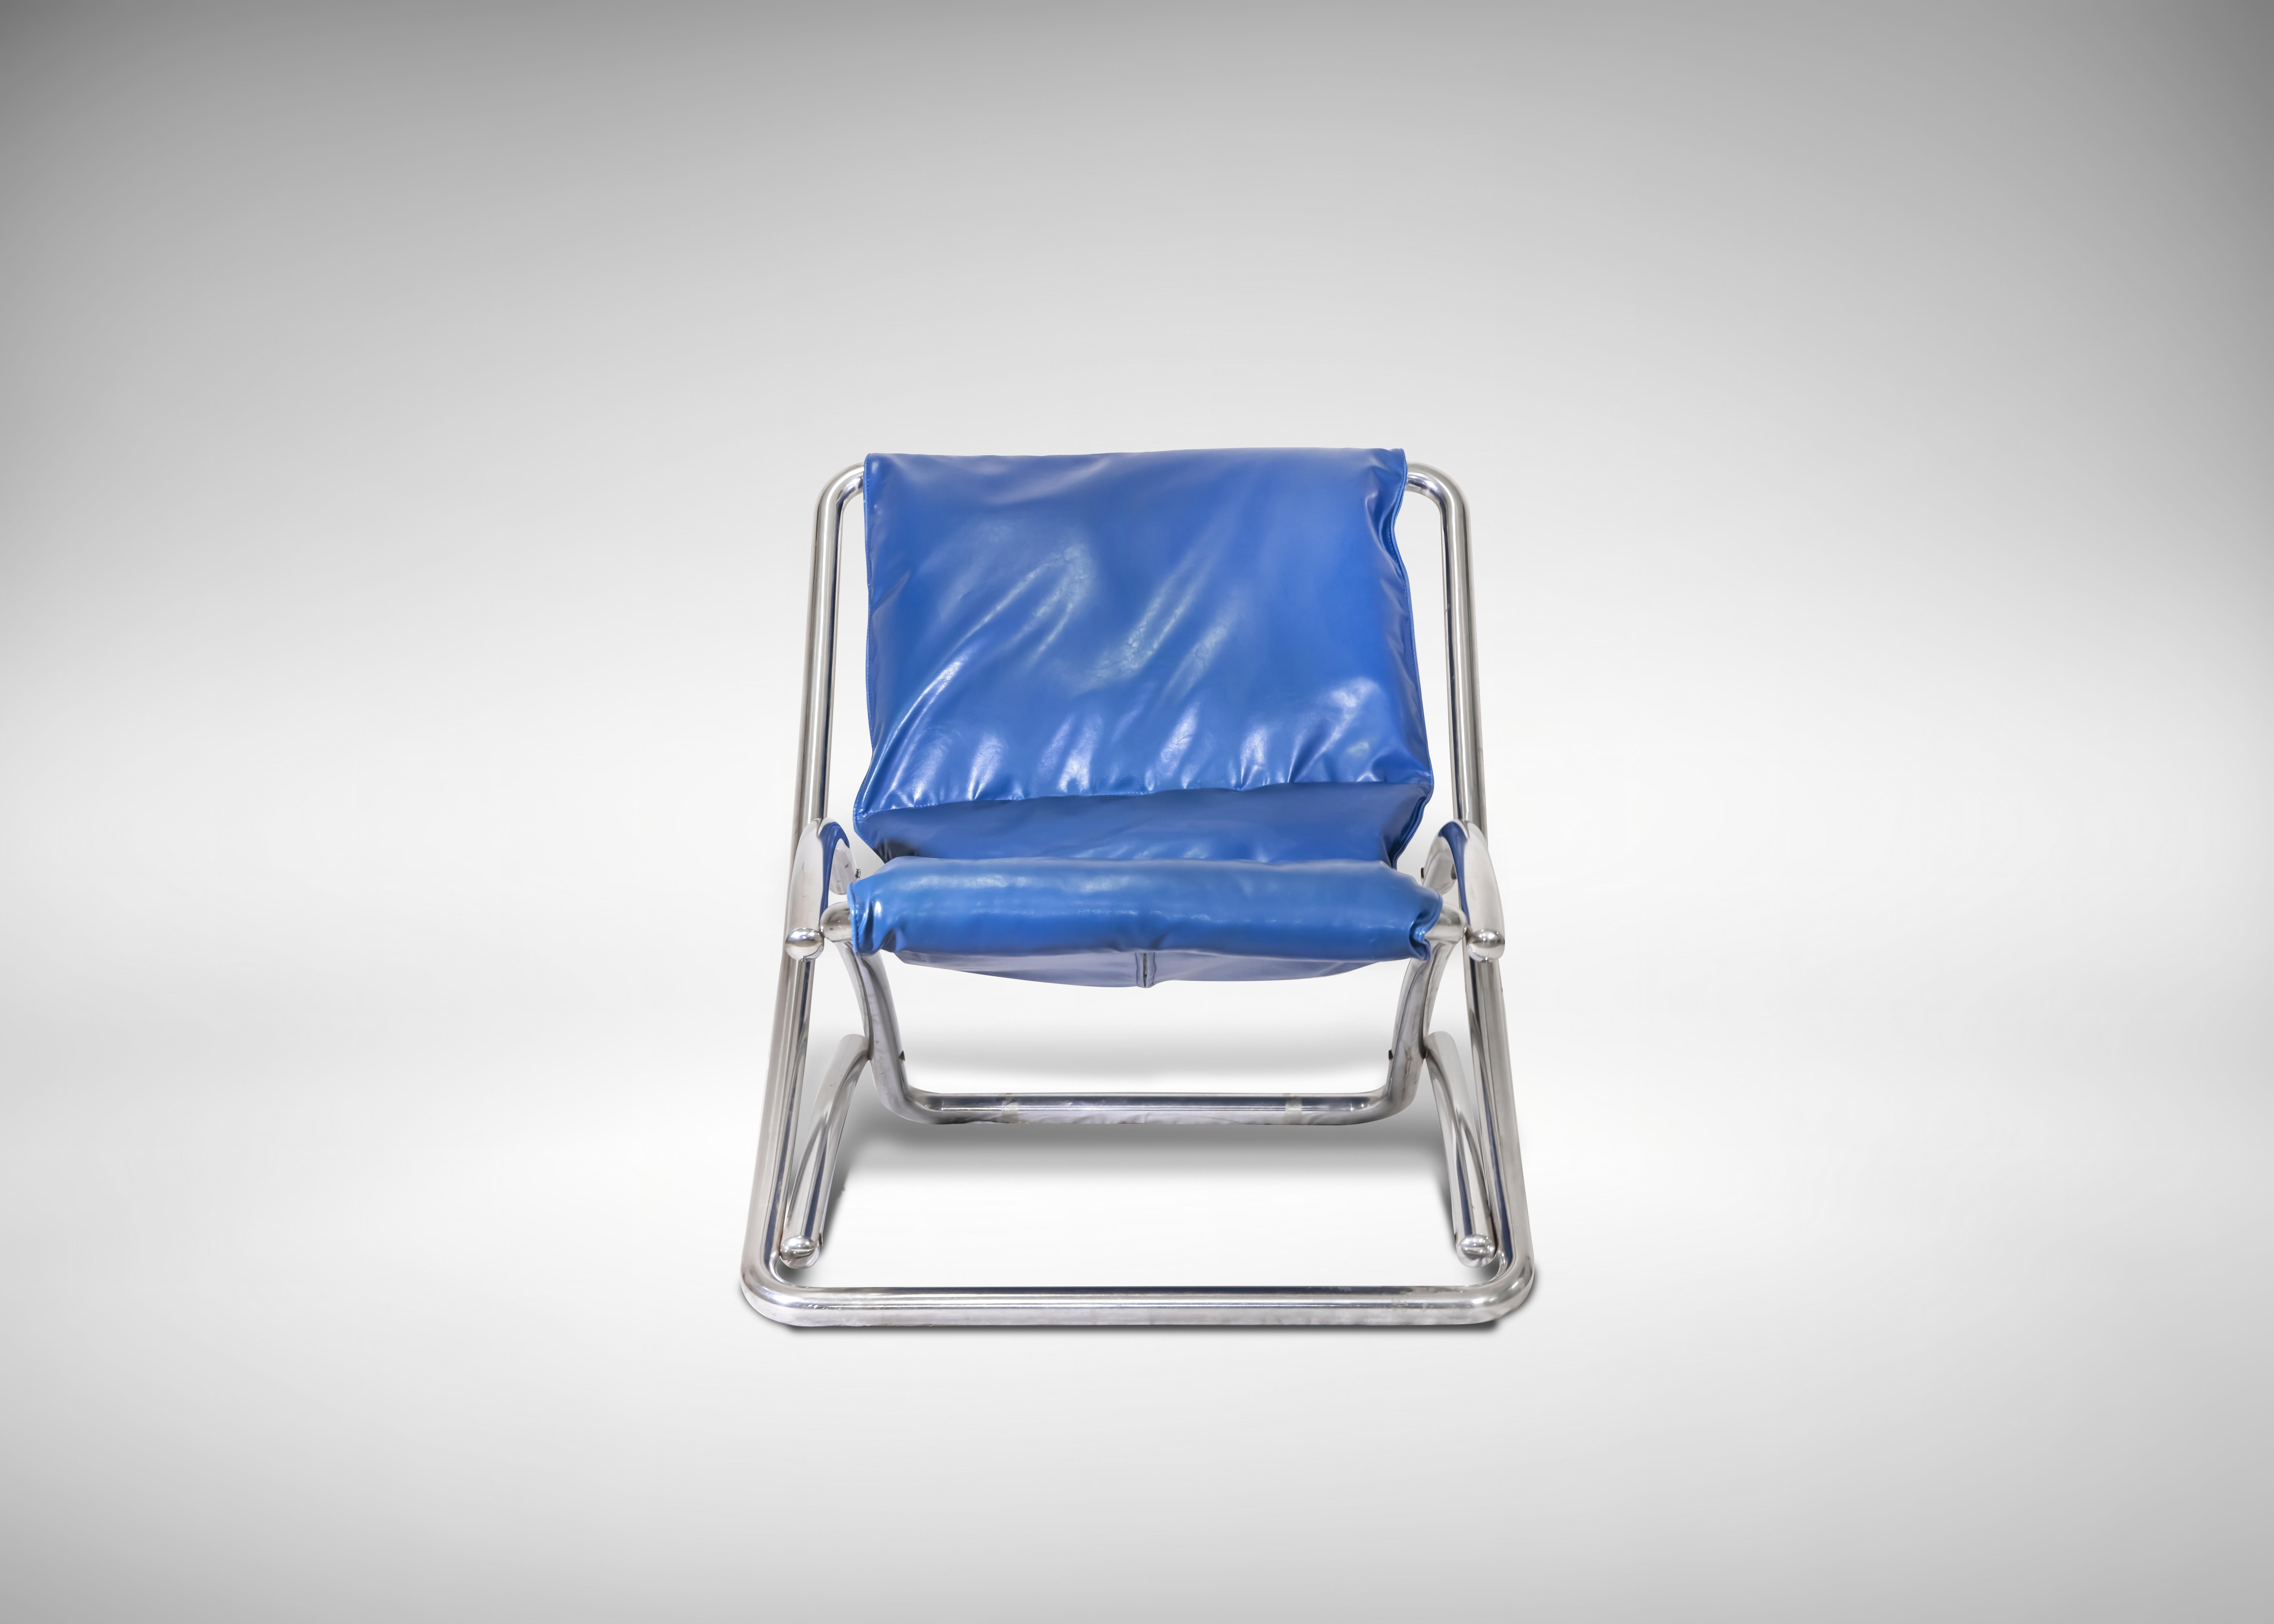 Chaise longue pliante en acier tubulaire chromé, Italie, années 1970.

Cuir bleu.

90 x 80 x 85 cm.

Bon état.